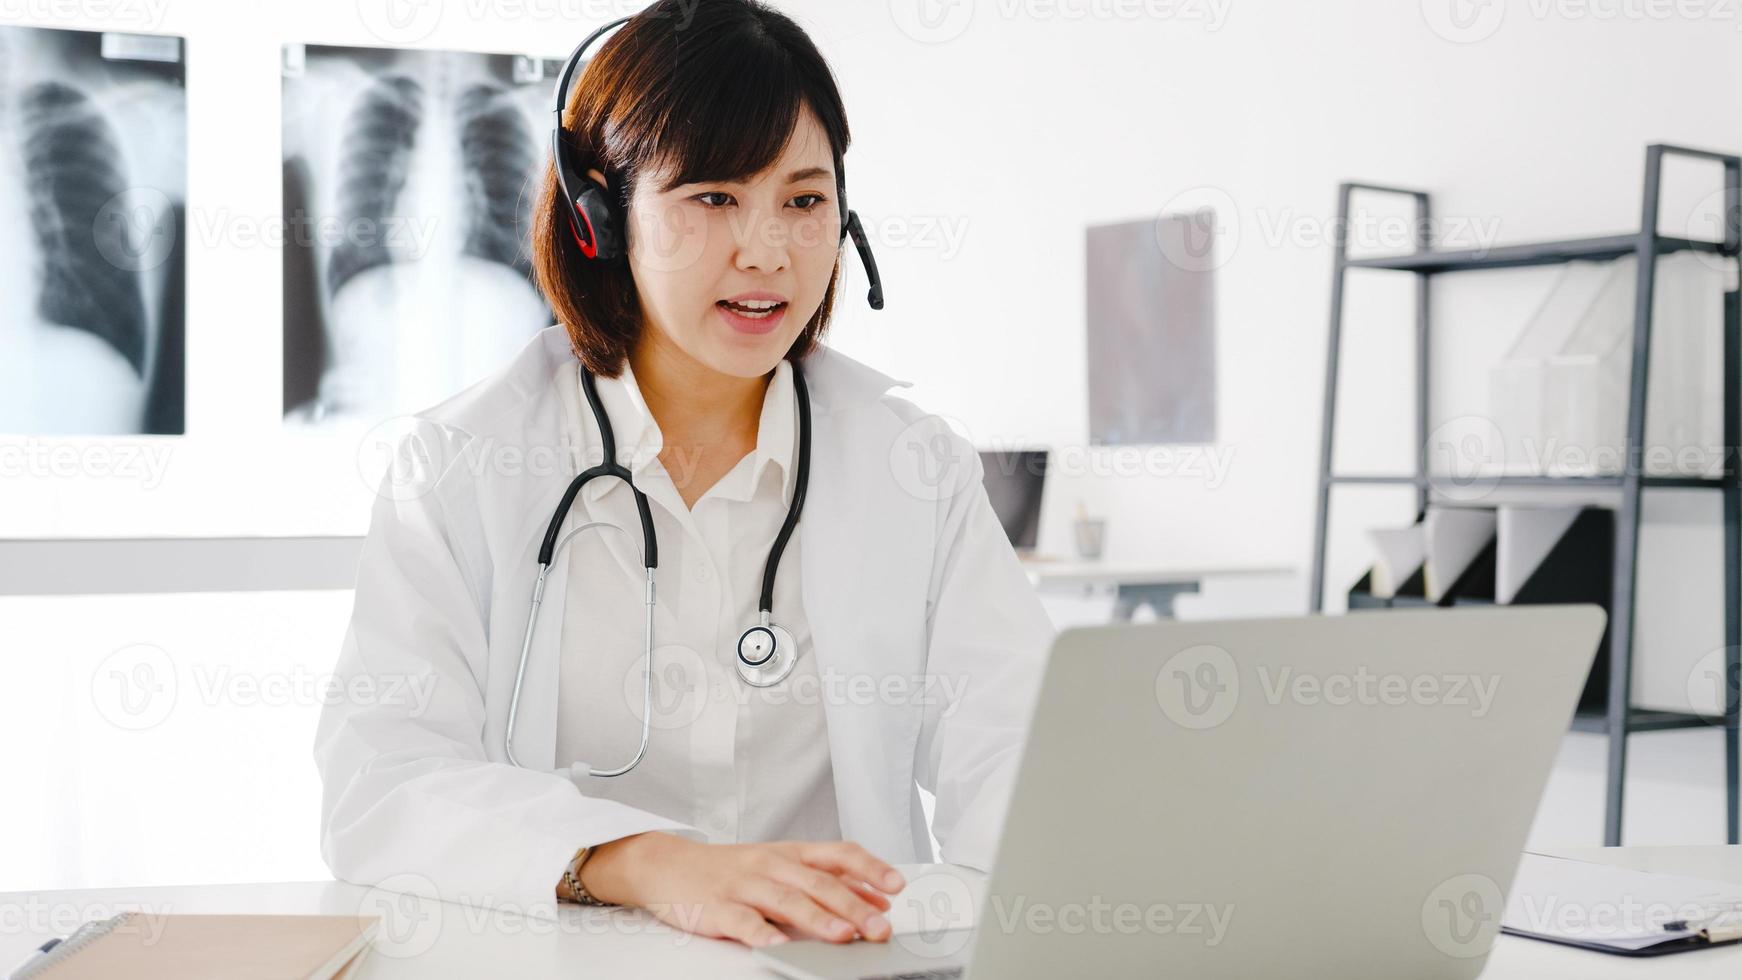 jonge Aziatische vrouwelijke arts in wit medisch uniform met stethoscoop met behulp van computerlaptop praten videoconferentiegesprek met patiënt aan balie in gezondheidskliniek of ziekenhuis. advies- en therapieconcept foto